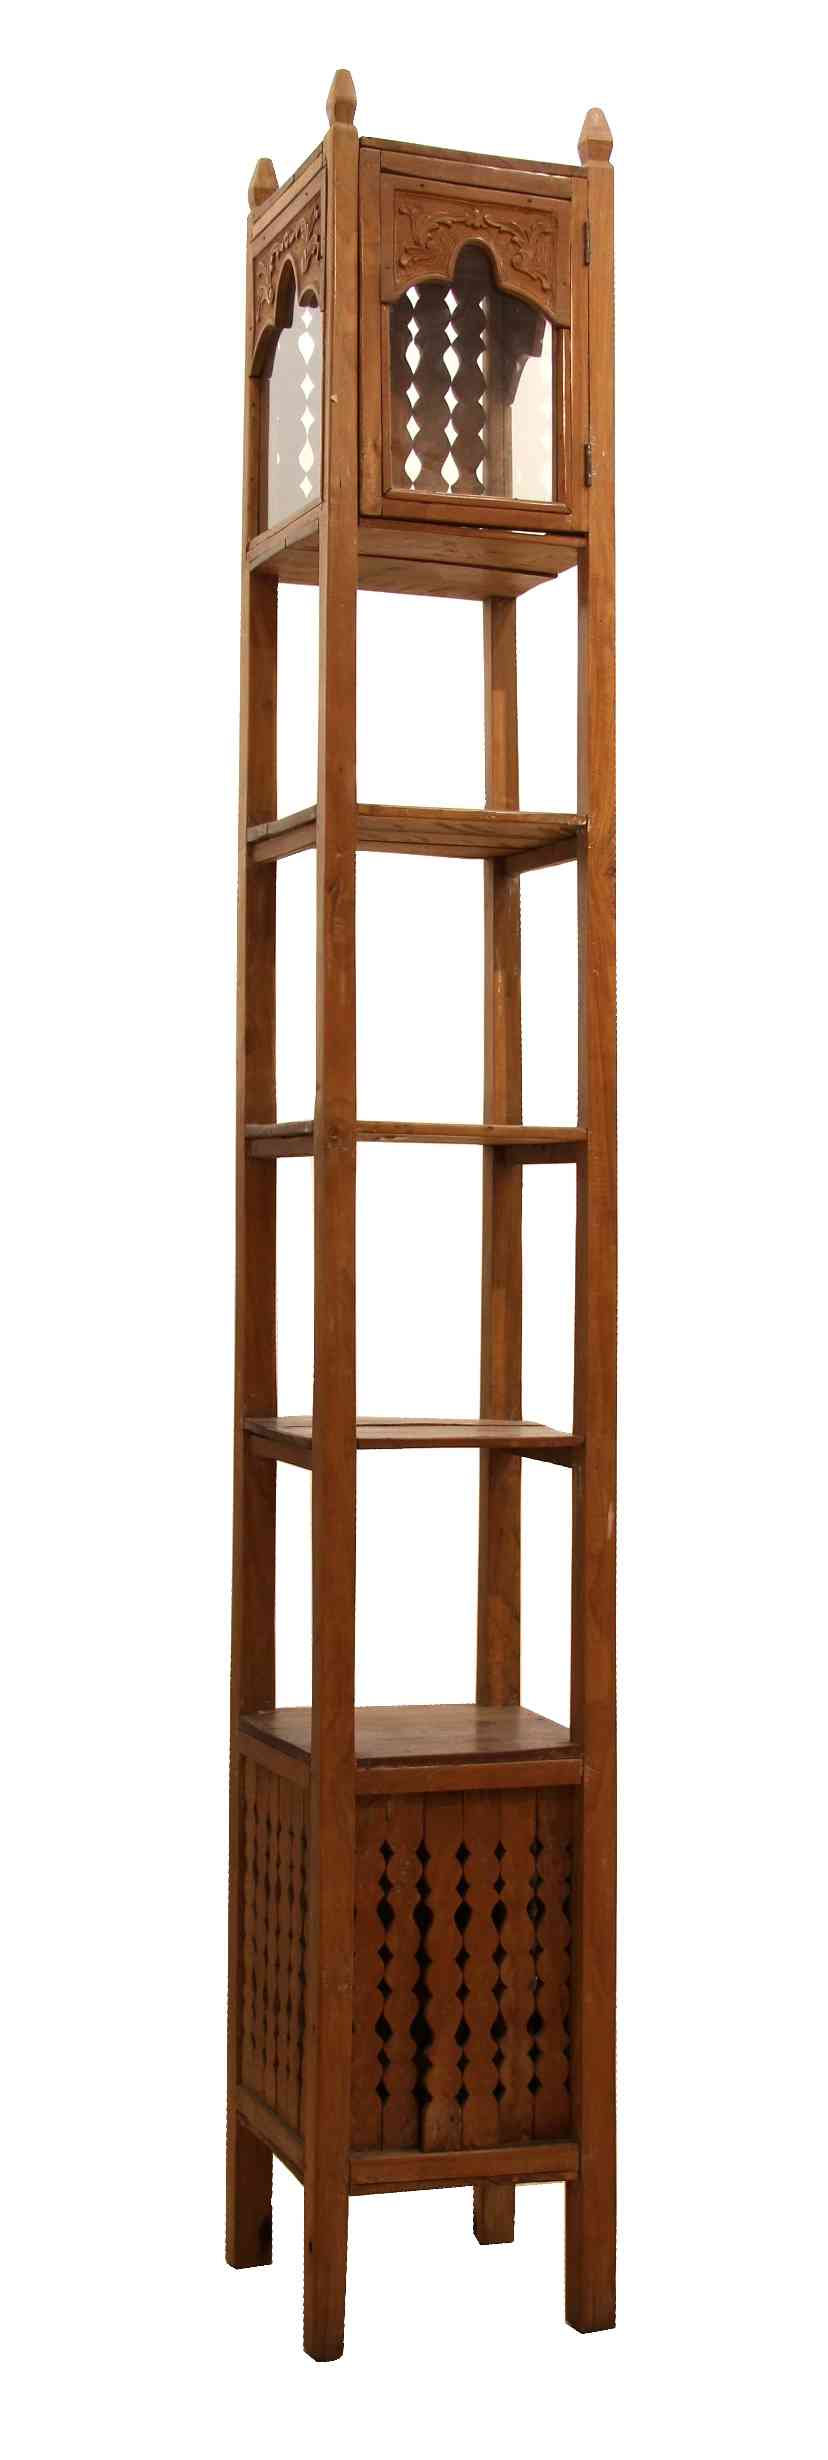 A tall wooden corner shelf